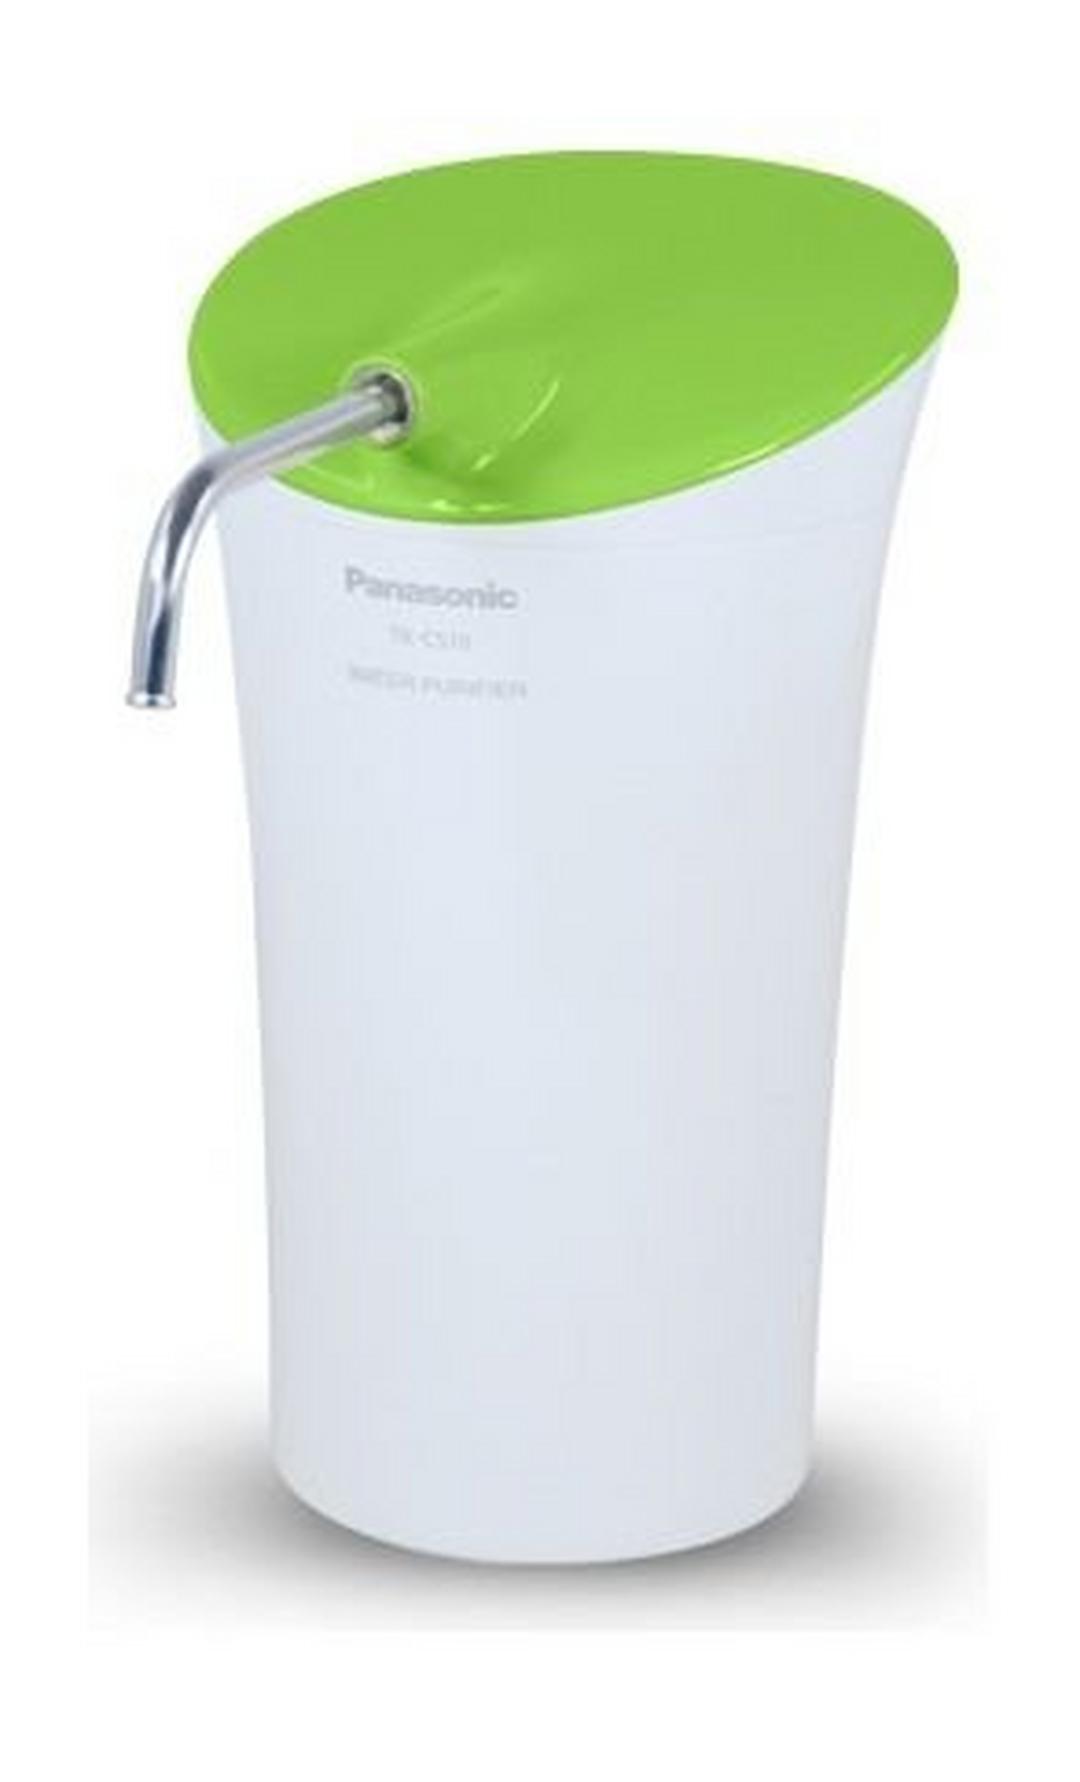 Panasonic Water Purifier (TK-CS10-WEX)